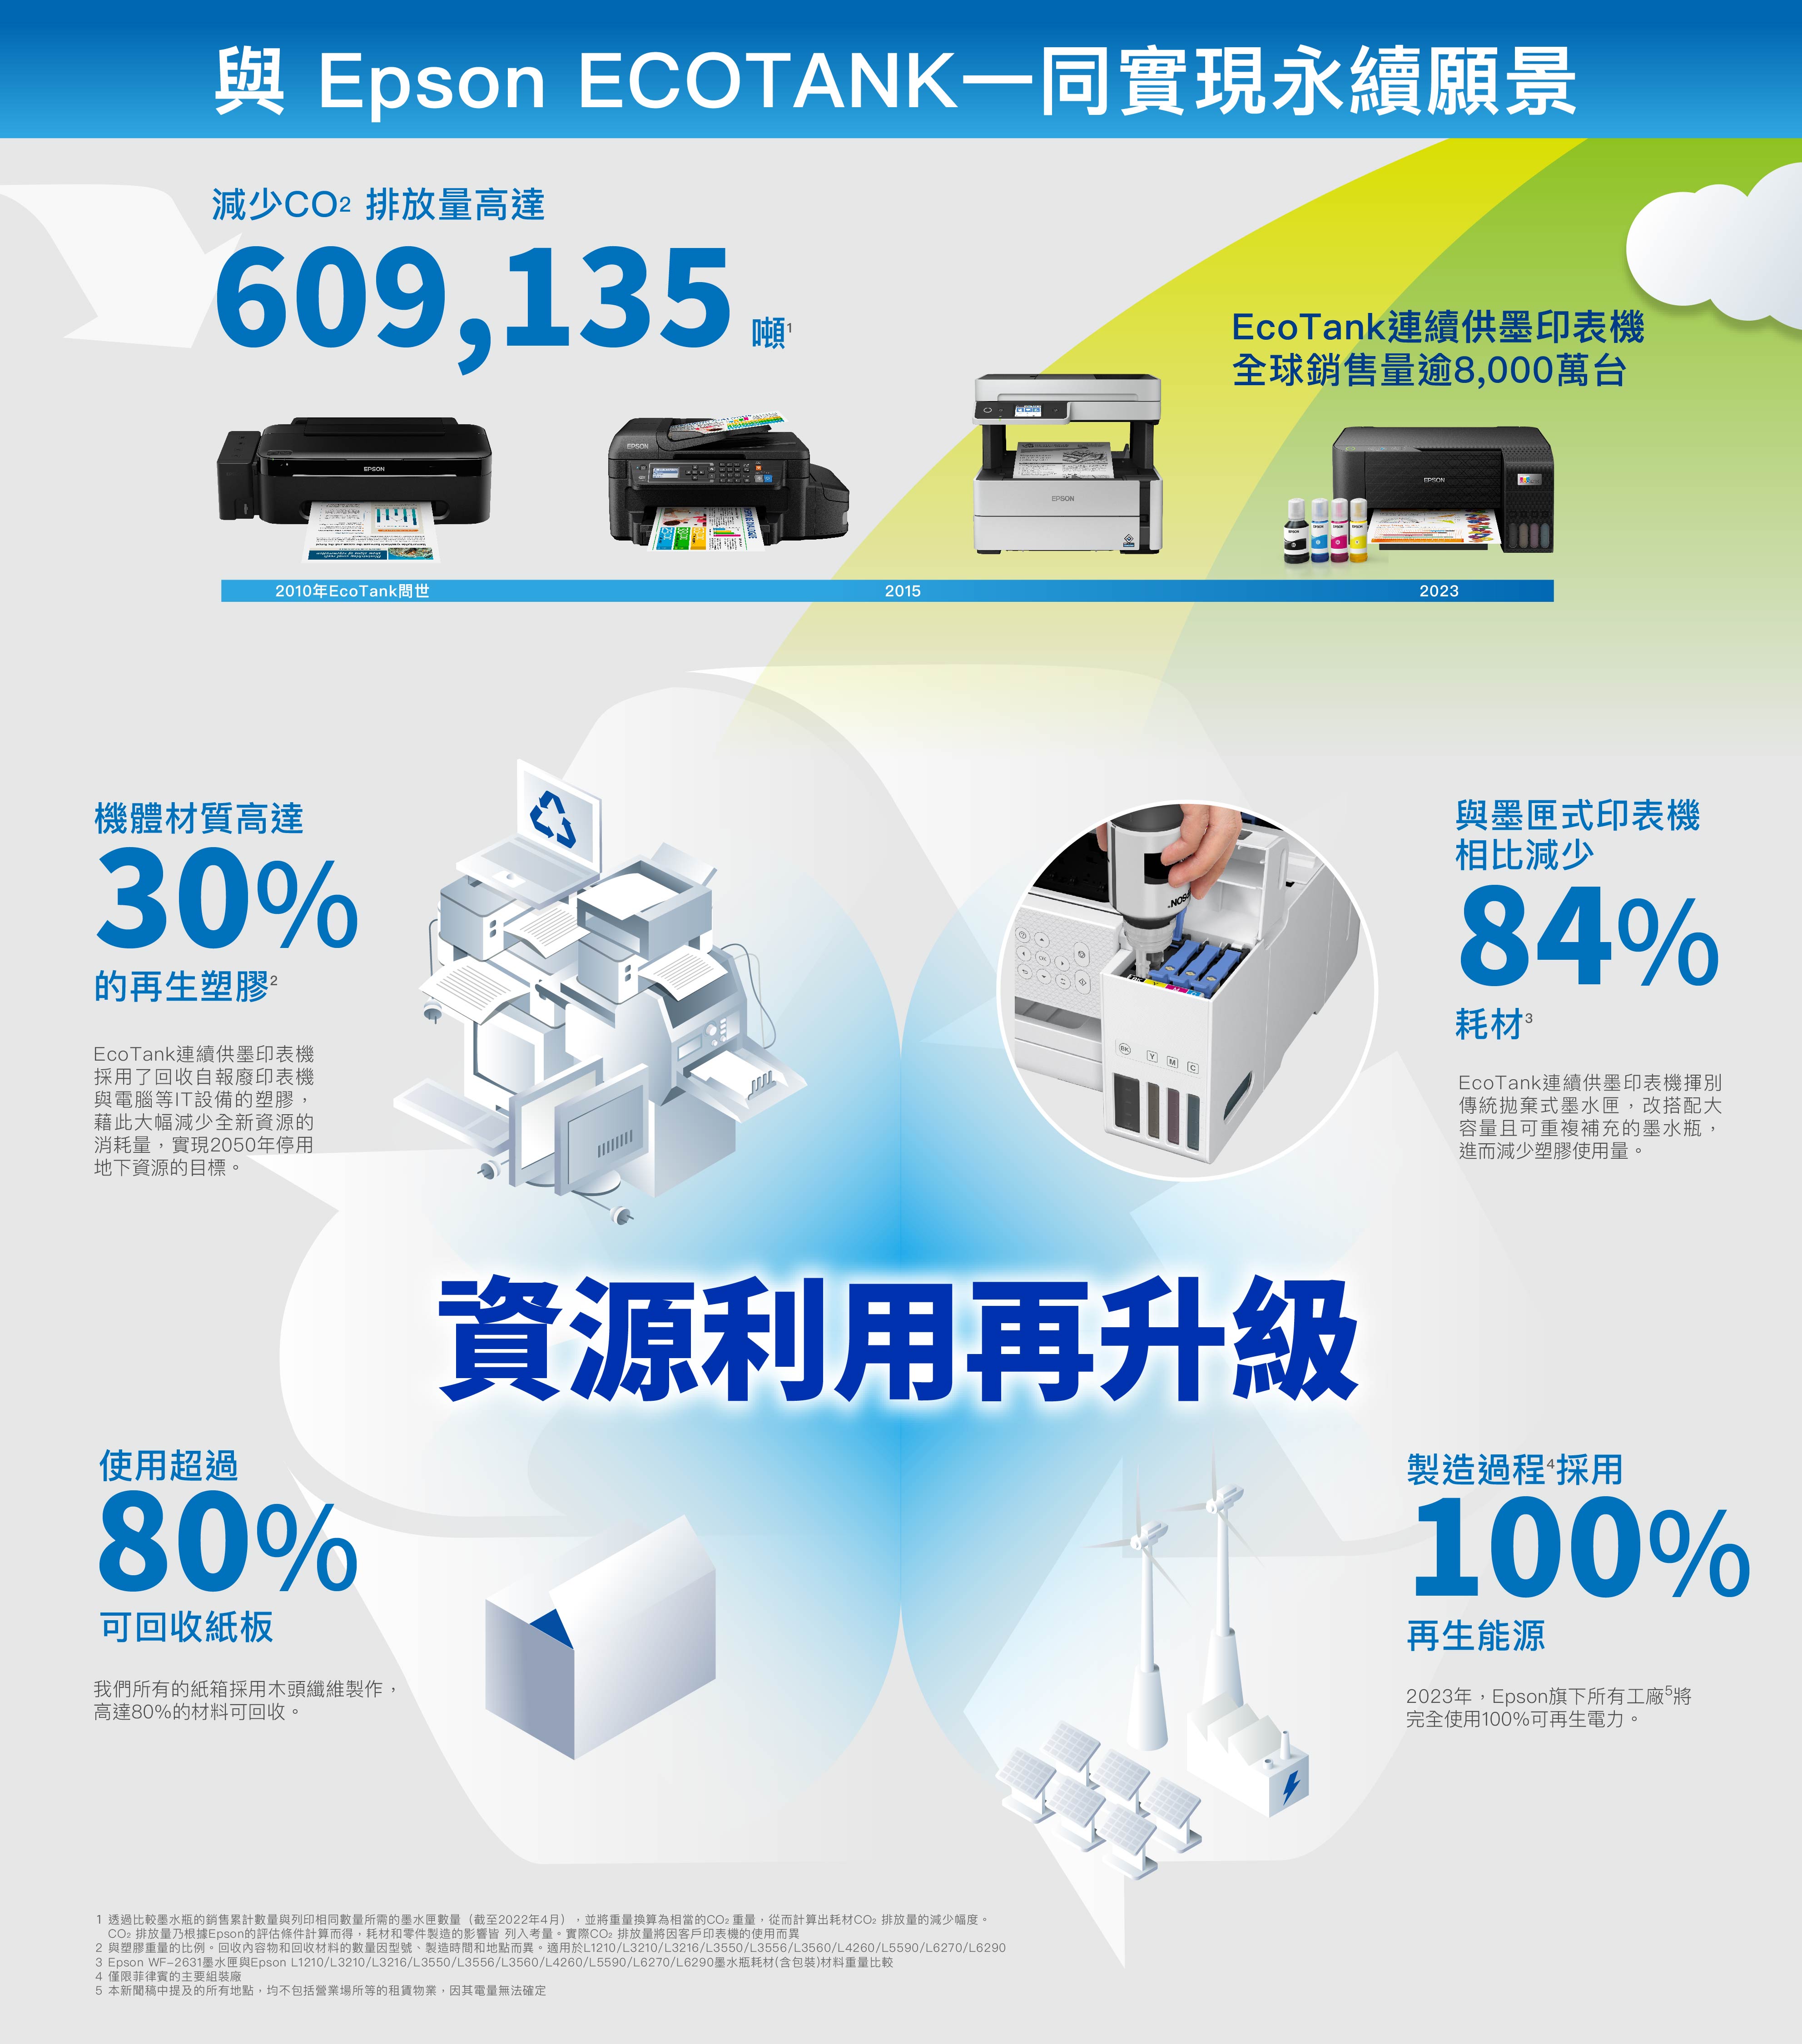 Epson EOTNK一同實現永續願景減少排放量高達EcoTank連續供墨印表機全球銷售量逾8,000萬台 2010年EcoTank問世機體材質高達30%的再生塑膠EcoTank連續供墨印表機採用了回收自報廢印表機與電腦等IT設備的塑膠,藉此大幅減少全新資源的消耗量,實現2050年停用地下資源的目標。 DIALOGUE2015EPSONEPSONEPSONEPSONEPSONACEPSON2023與墨匣式印表機相比減少84%耗材 EcoTank連續供墨印表機揮別傳統拋棄式墨水匣,改搭配大容量且可重複補充的墨水瓶,進而減少塑膠使用量。BKY M使用超過80%可回收紙板我們所有的紙箱採用木頭纖維製作,高達80%的材料可回收。資源利用再升級製造過程 採用100%再生能源2023年,Epson旗下所有工廠5完全使用100%可再生電力。1 透過比較墨水瓶的銷售累計數量與列印相同數量所需的墨水匣數量(截至2022年4月) ,並將重量換算為相當的CO2重量,從而計算出耗材CO2排放量的減少幅度。CO2排放量乃根據Epson的評估條件計算而得,耗材和零件製造的影響皆 列入考量。實際CO2排放量將因客戶印表機的使用而異2 與塑膠重量的比例。回收內容物和回收材料的數量因型號、製造時間和地點而異。適用於L1210/L3210/L3216/L3550/L3556/L3560/L4260/L5590/L6270/L62903 Epson WF-2631墨水匣與Epson L1210/L3210/L3216/L3550/L3556/L3560/L4260/L5590/L6270/L6290墨水瓶耗材(含包裝)材料重量比較4 僅限菲律賓的主要組裝廠5 本新聞稿中提及的所有地點,均不包括營業場所等的租賃物業,因其電量無法確定